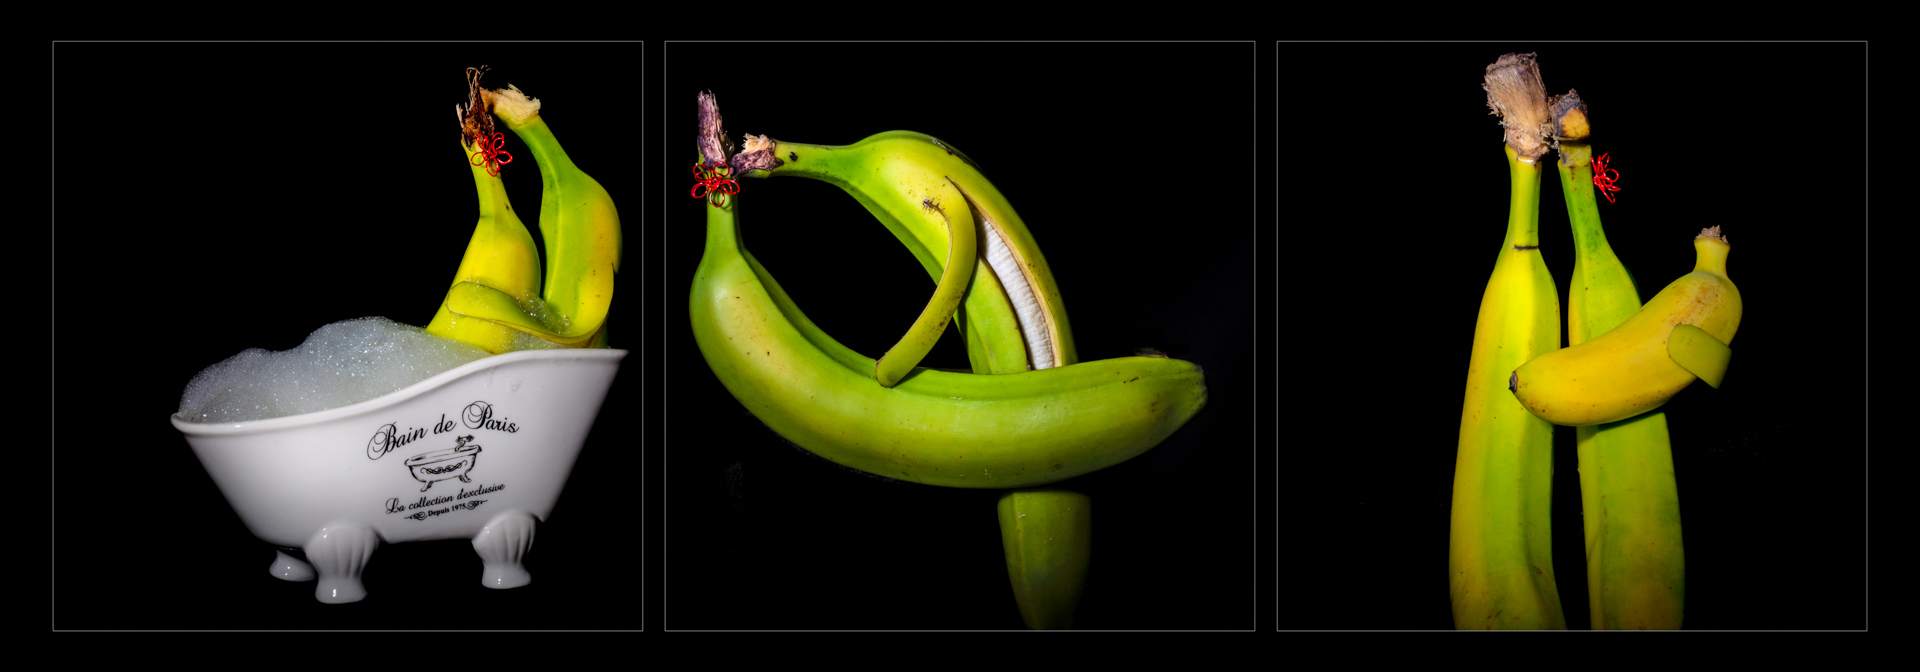 71-2104-banaan.jpg